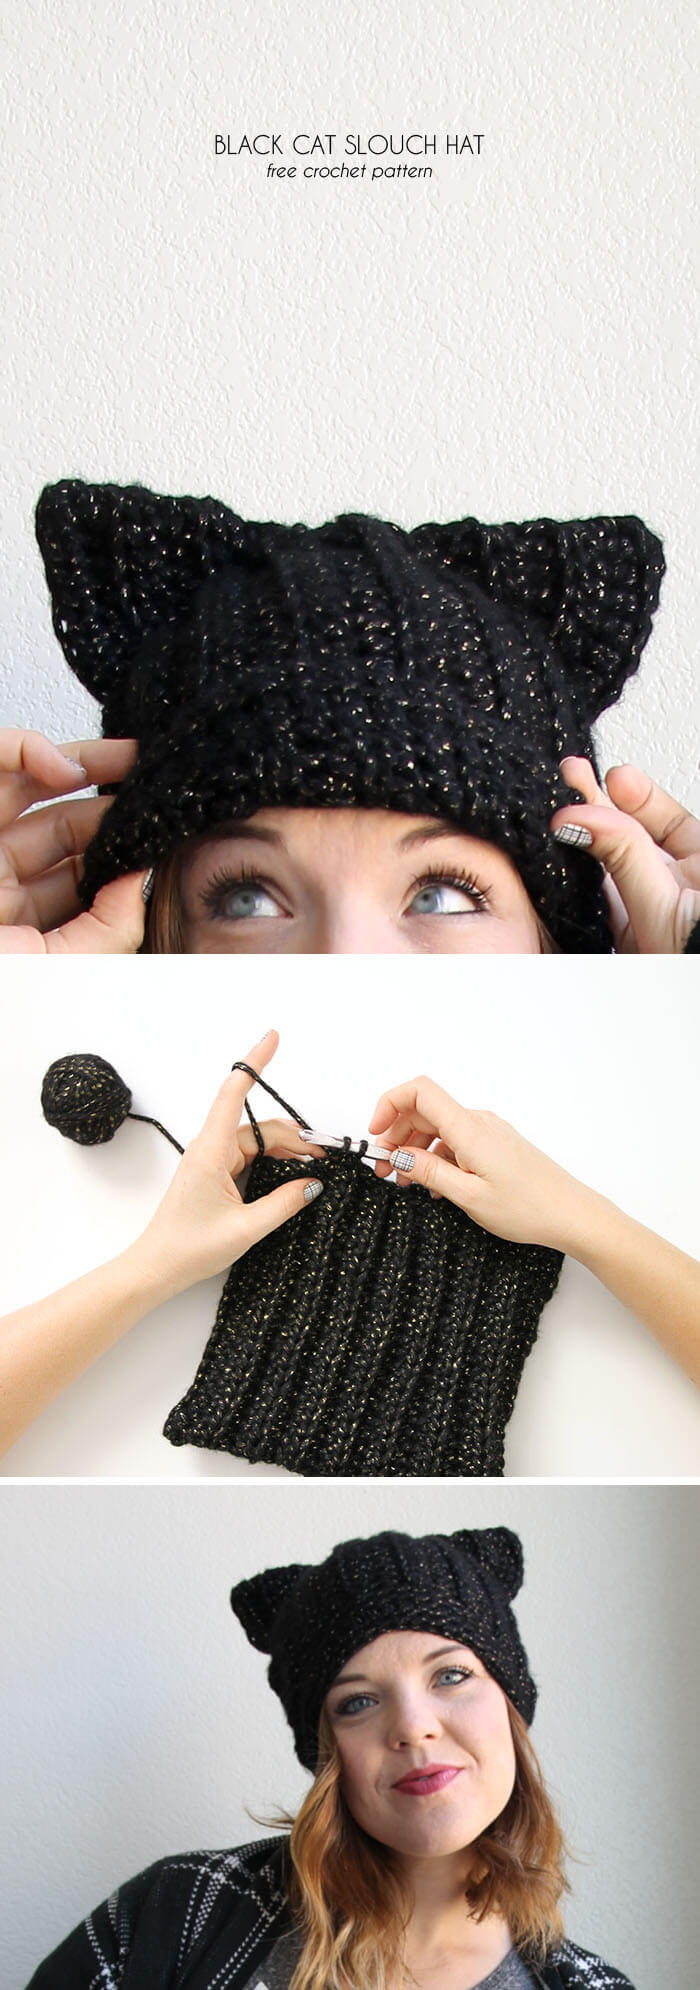 Crochet Hat With Ears Pattern Black Cat Slouch Hat Free Crochet Cat Hat Pattern Persia Lou